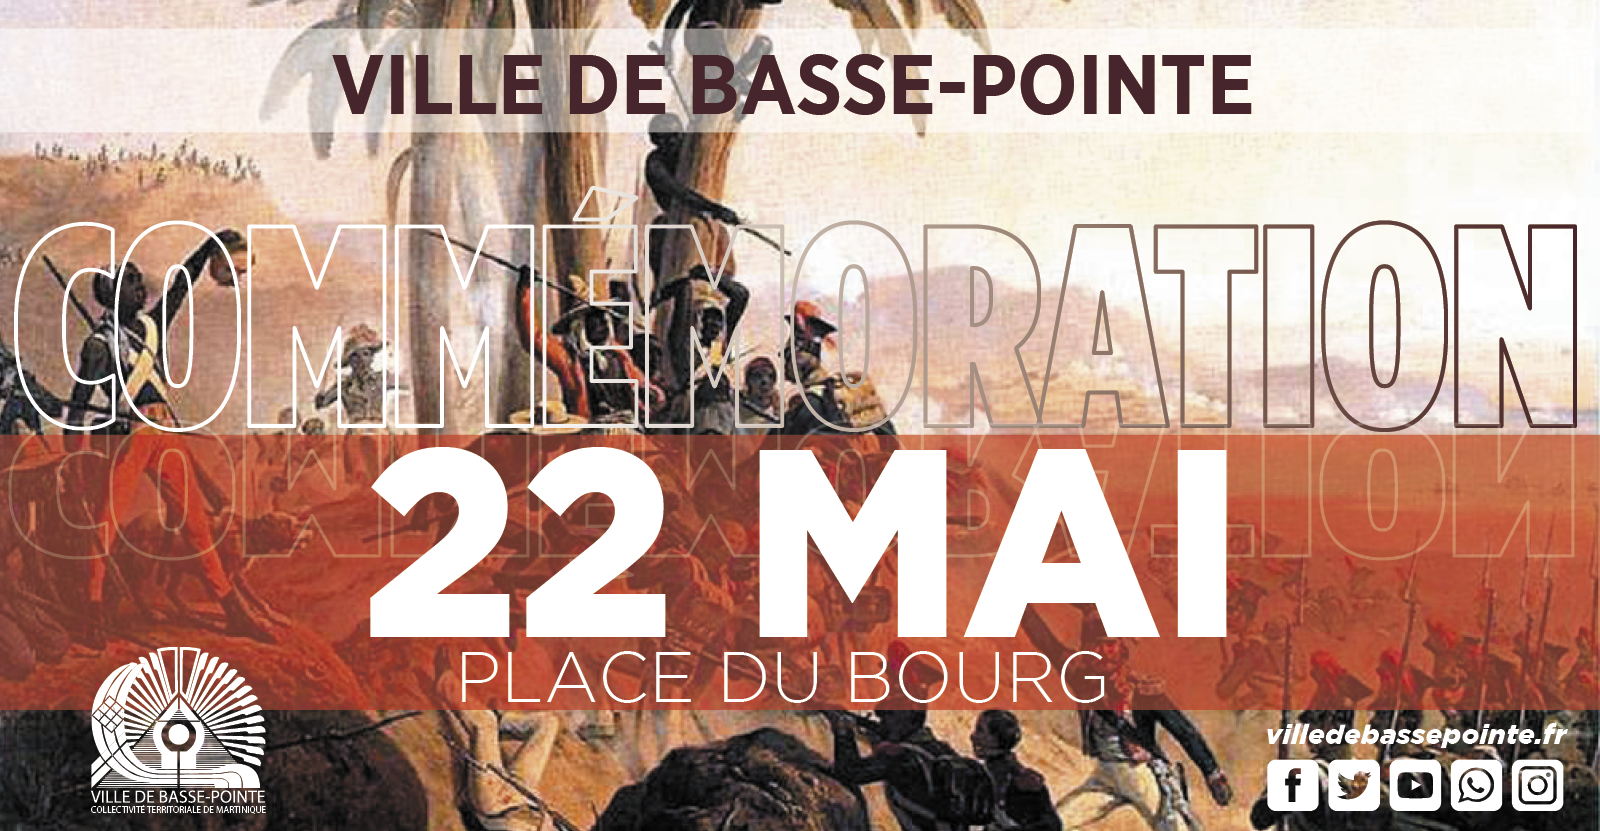 Commémoration de l'Abolition de l'esclavage - Ville de Basse-Pointe